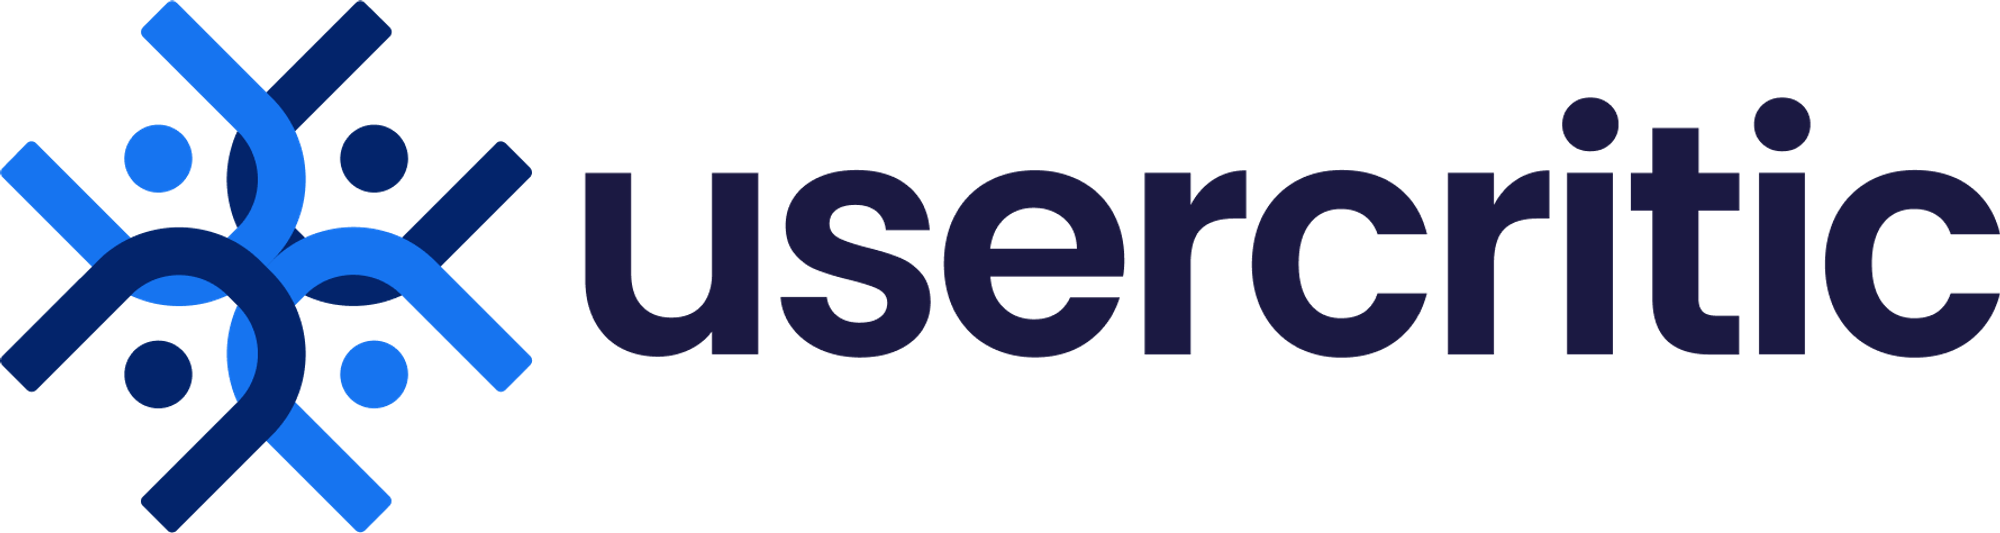 Modern logo design for usercritic.com